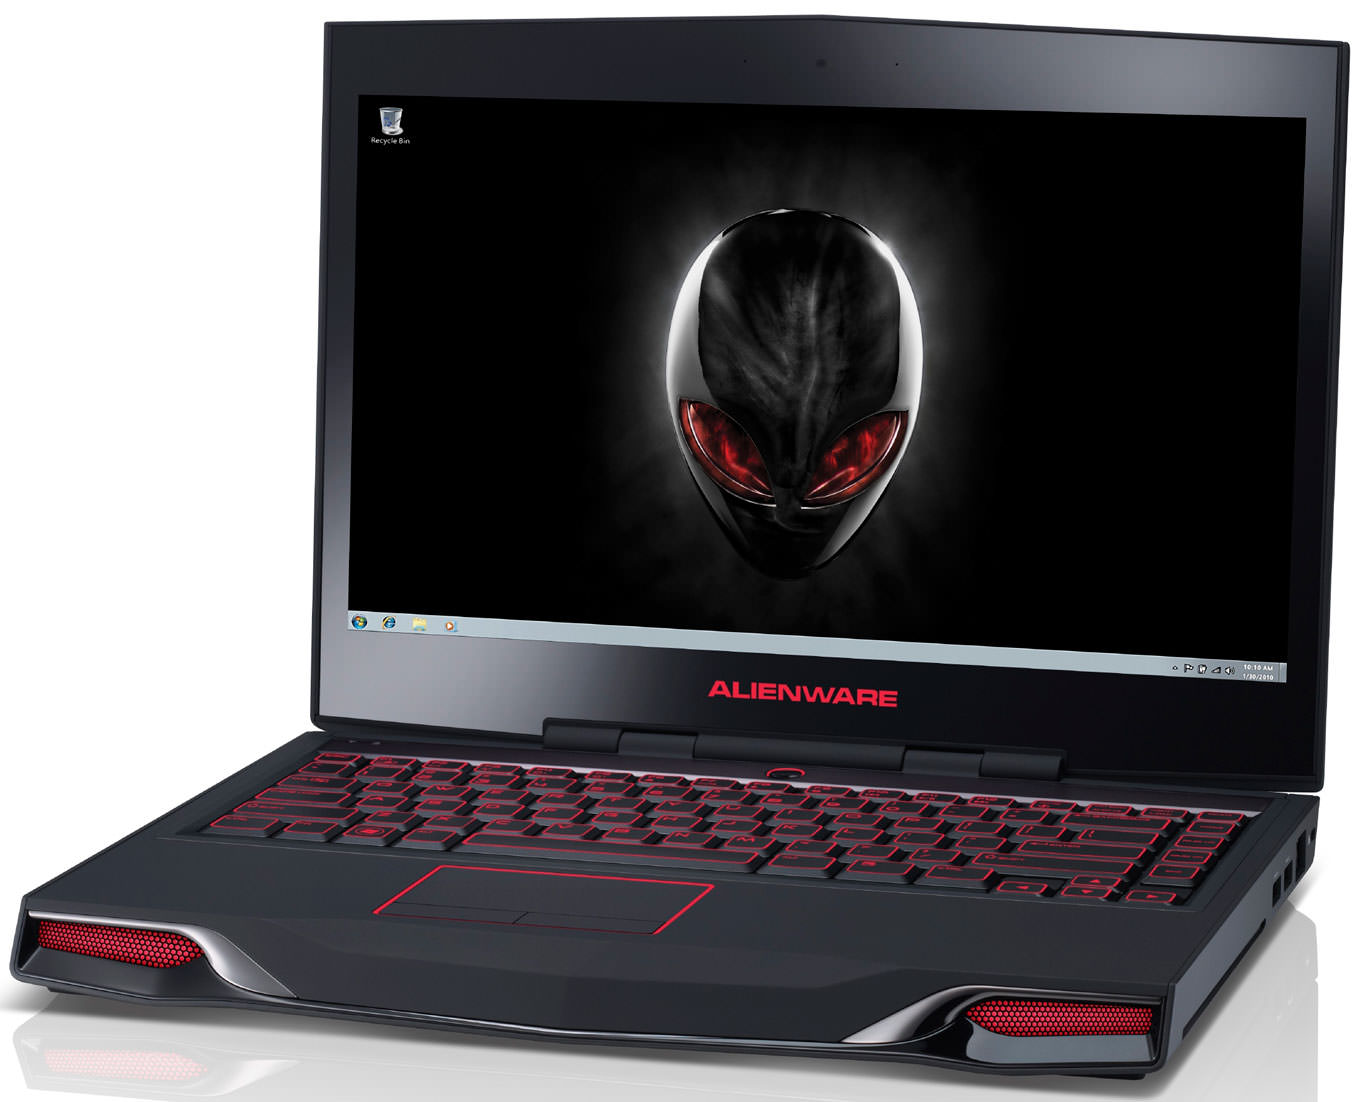 Dell Alienware M14X Laptop (Core i7 3rd Gen/6 GB/750 GB/Windows 8/1 GB) Price